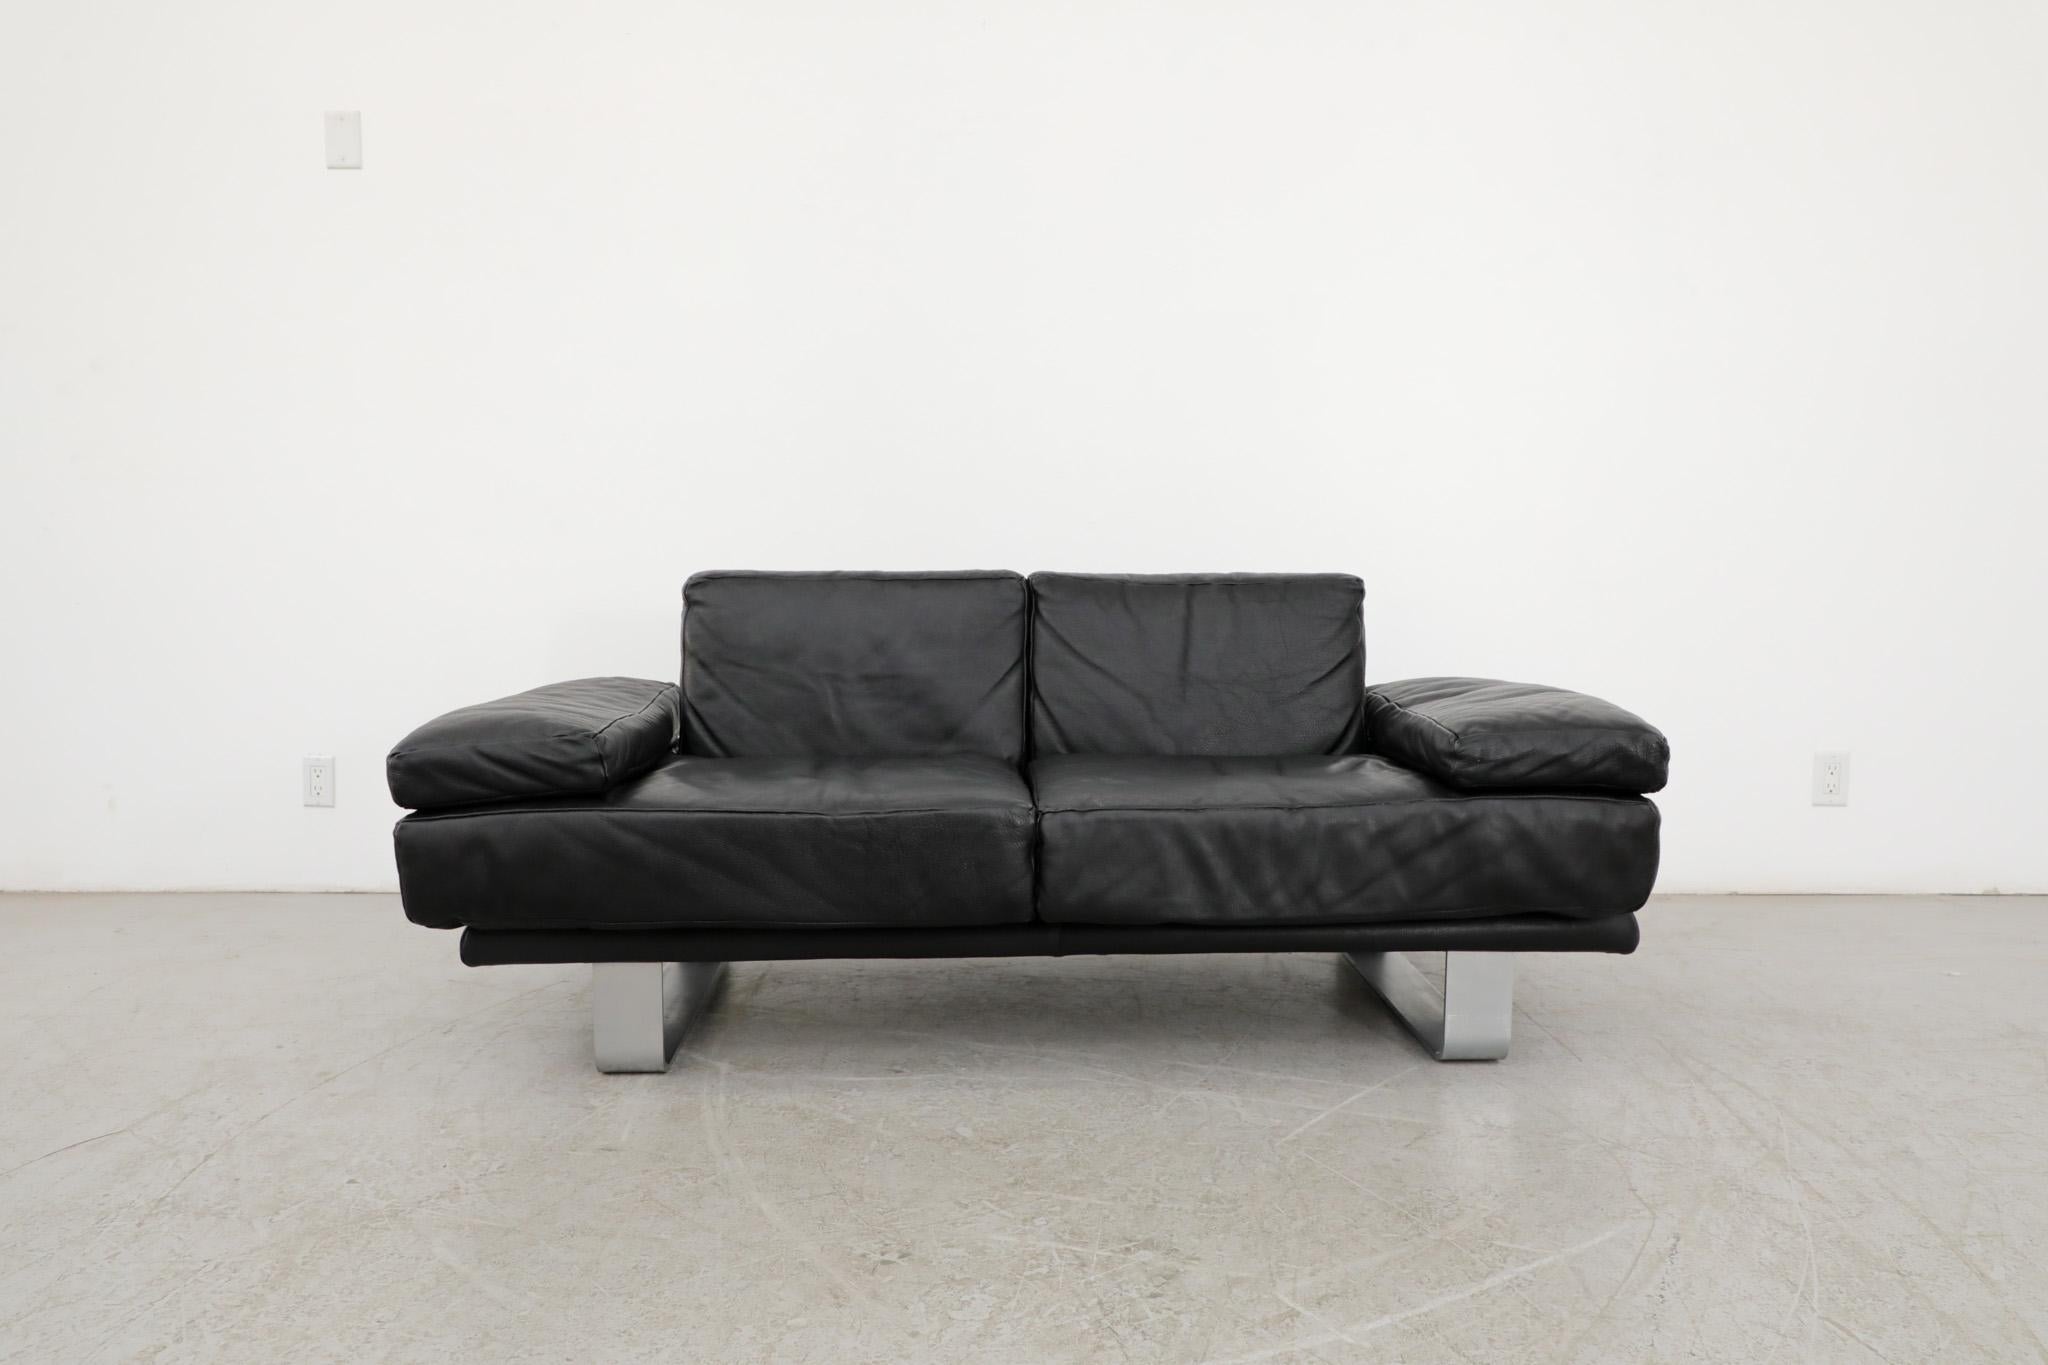 Erstaunlicher Rolf Benz '6600' Liegesessel aus schwarzem Leder. Ein vielseitiges, minimalistisches Sofa mit zeitlosem Design und gemütlichem Sitz. In beeindruckendem Originalzustand mit einigen alters- und gebrauchsbedingten Abnutzungserscheinungen.